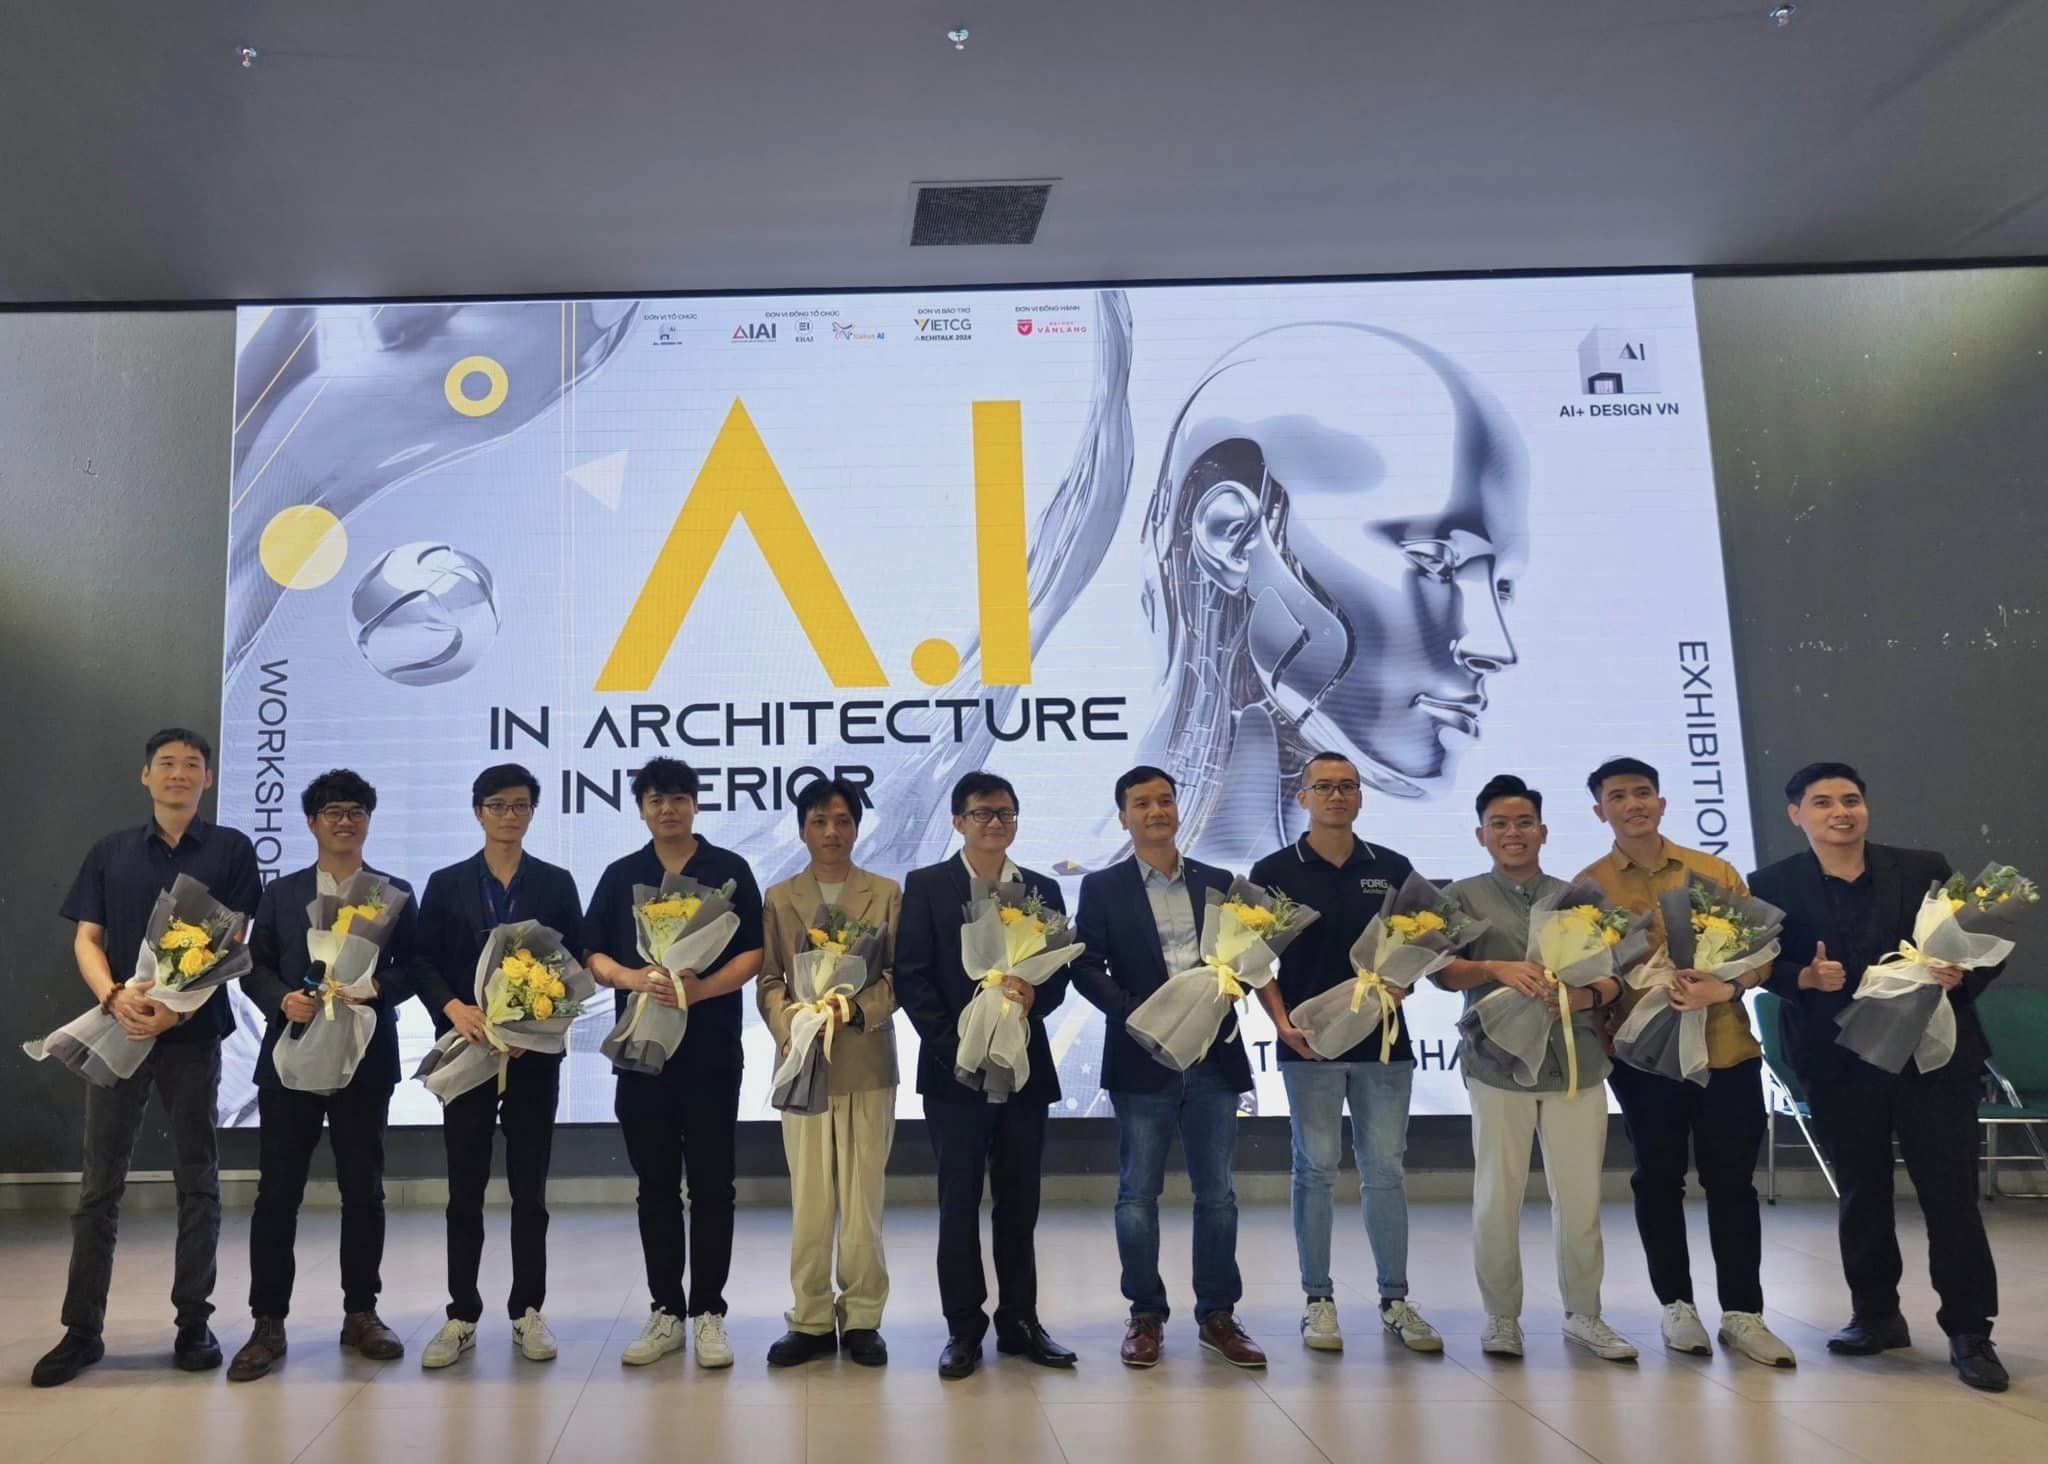 Workshop AI+: Kết nối cộng đồng ứng dụng AI trong thiết kế kiến trúc nội thất